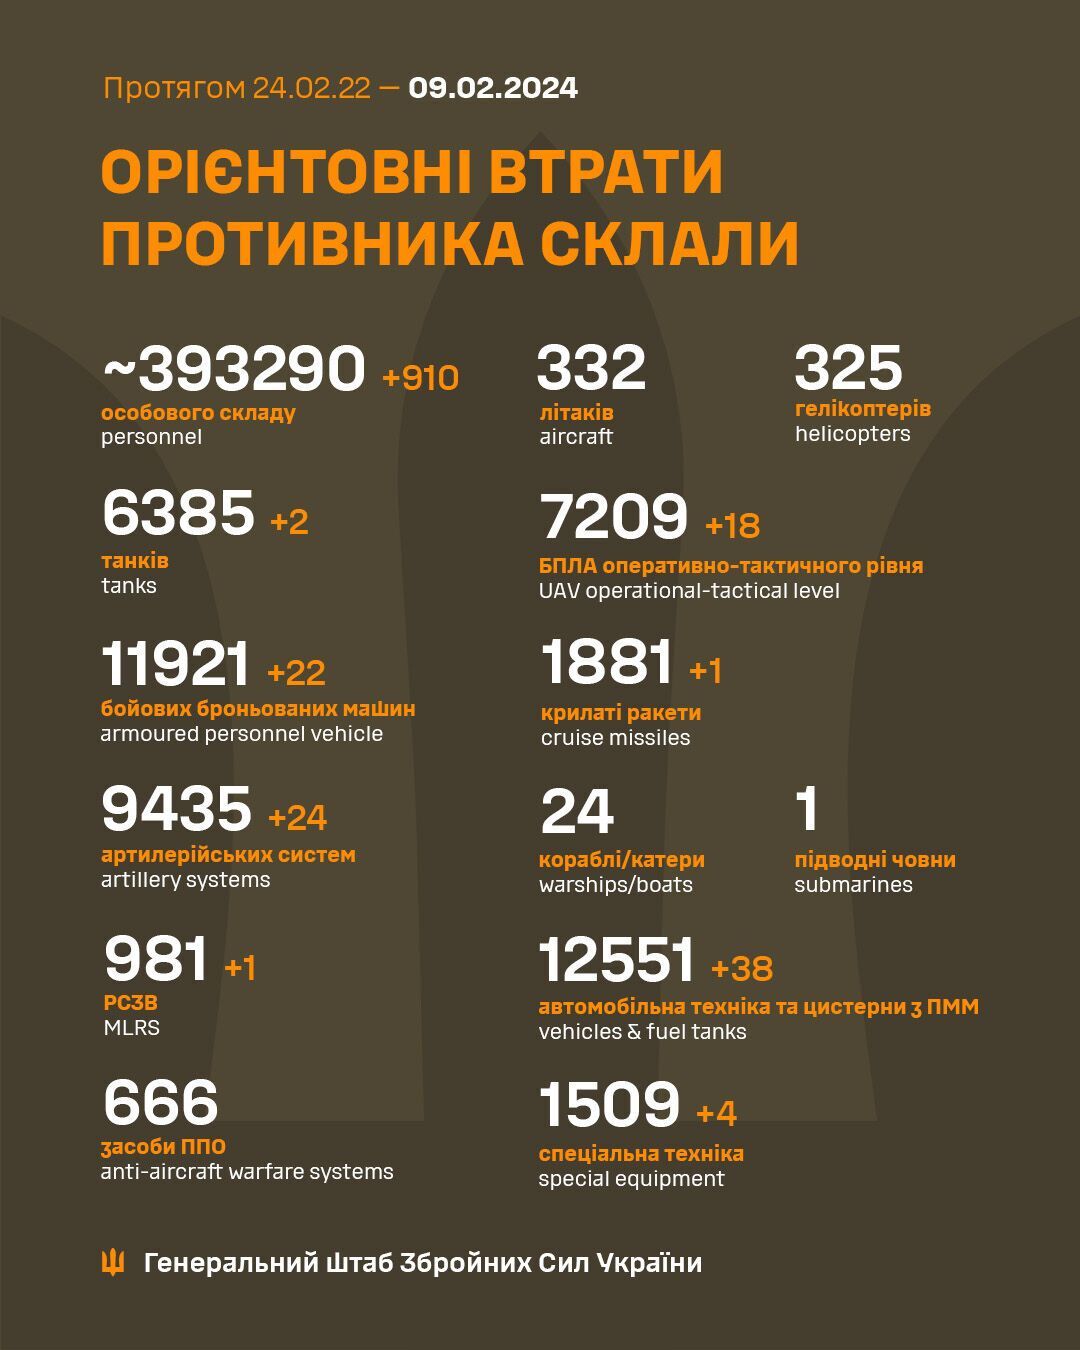 Минус 24 артсистемы и 910 оккупантов: Генштаб обновил данные о потерях ВС РФ